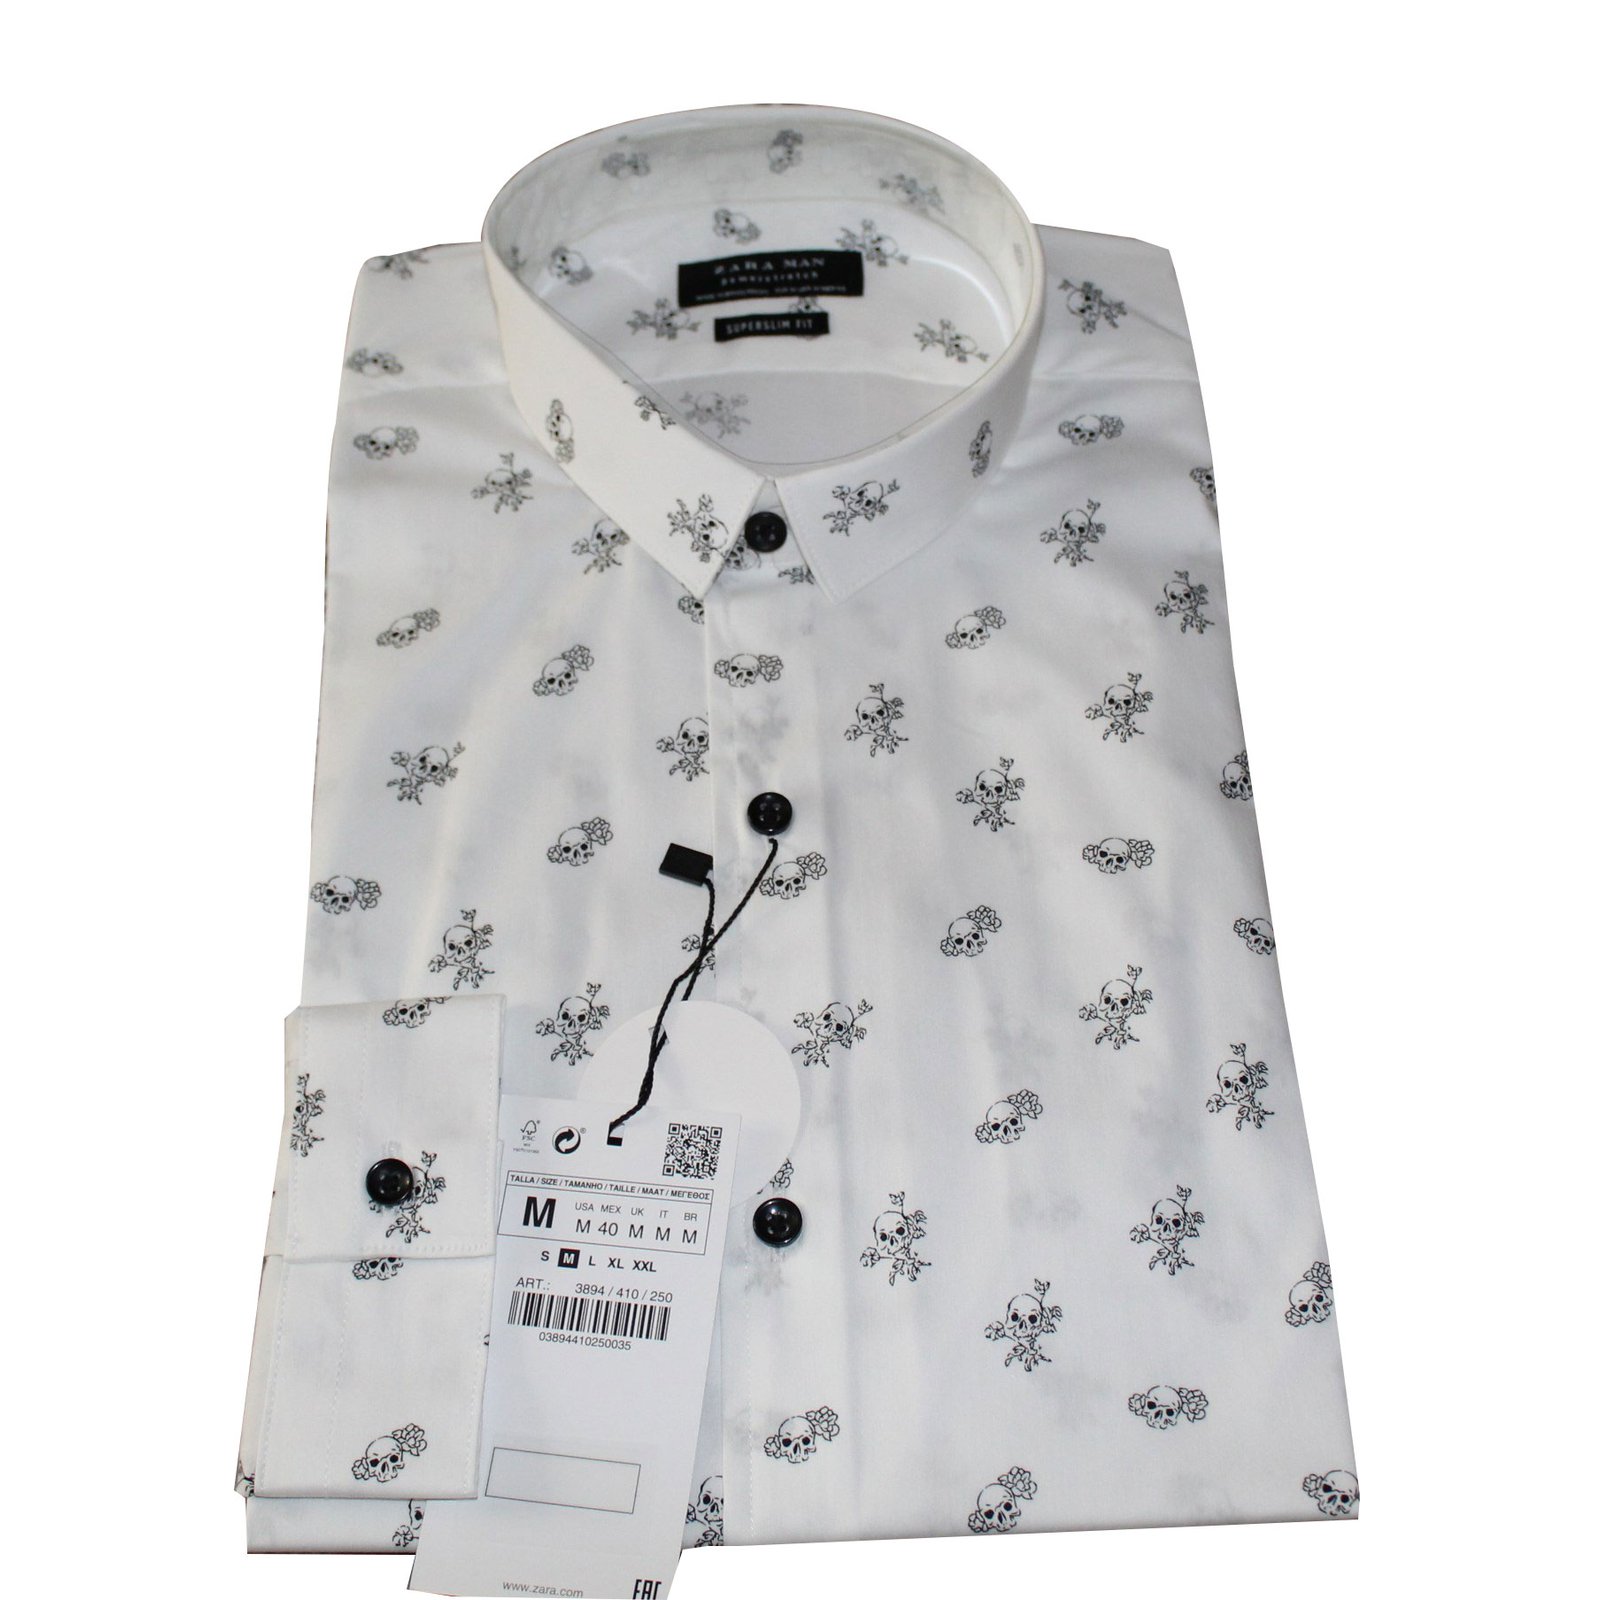 zara white shirt price